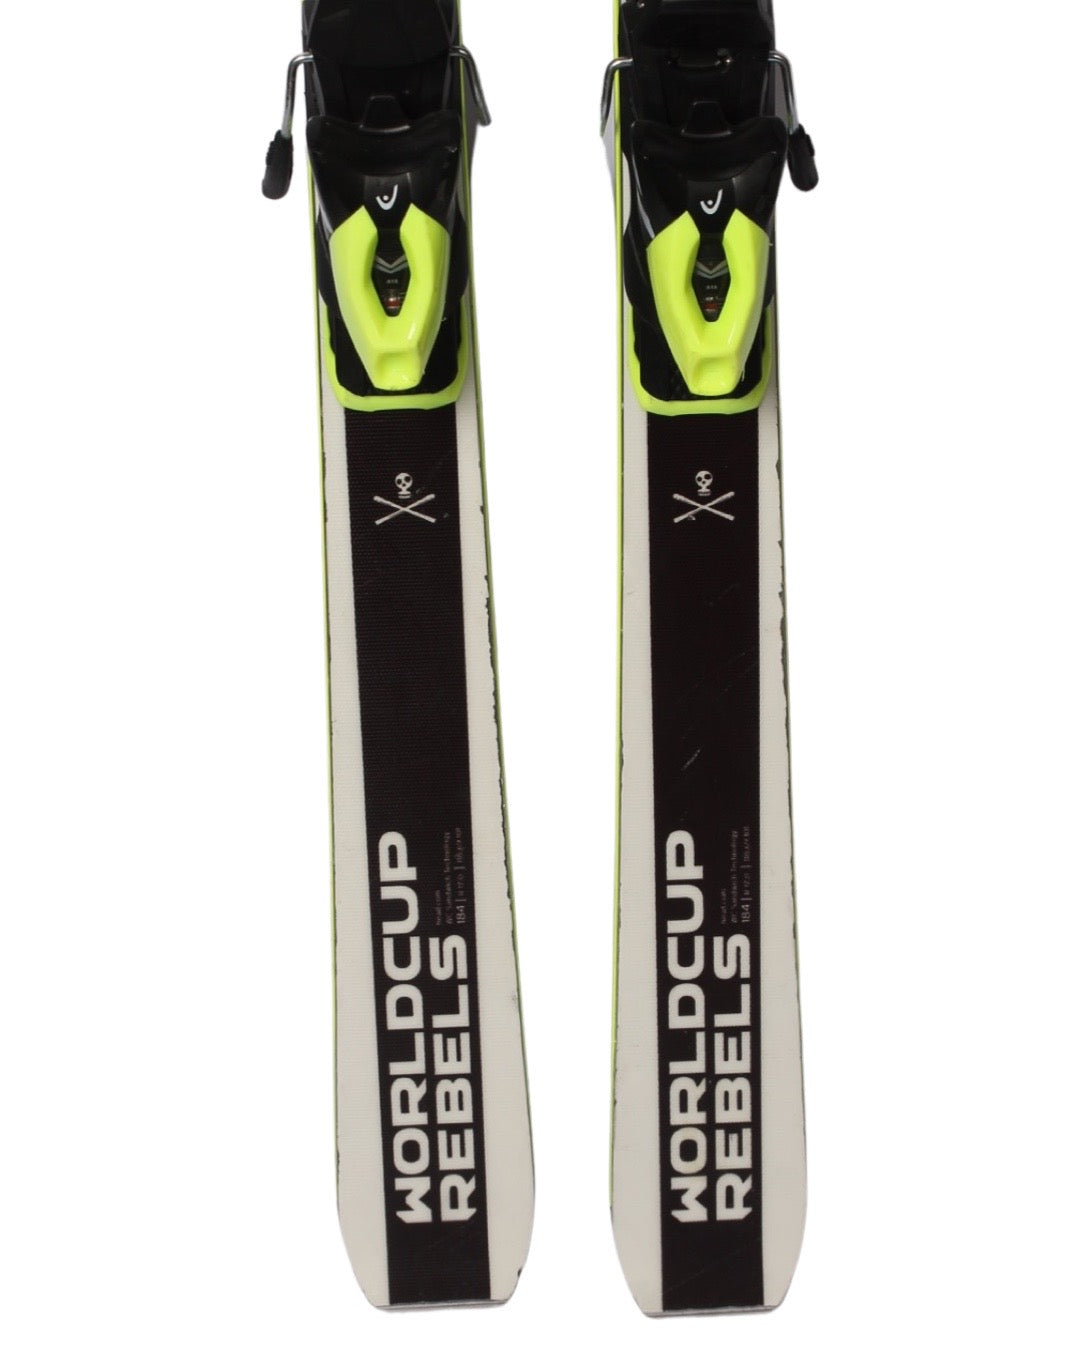 Ski - Head Worldcup Rebels i.GSR - 2499 kr